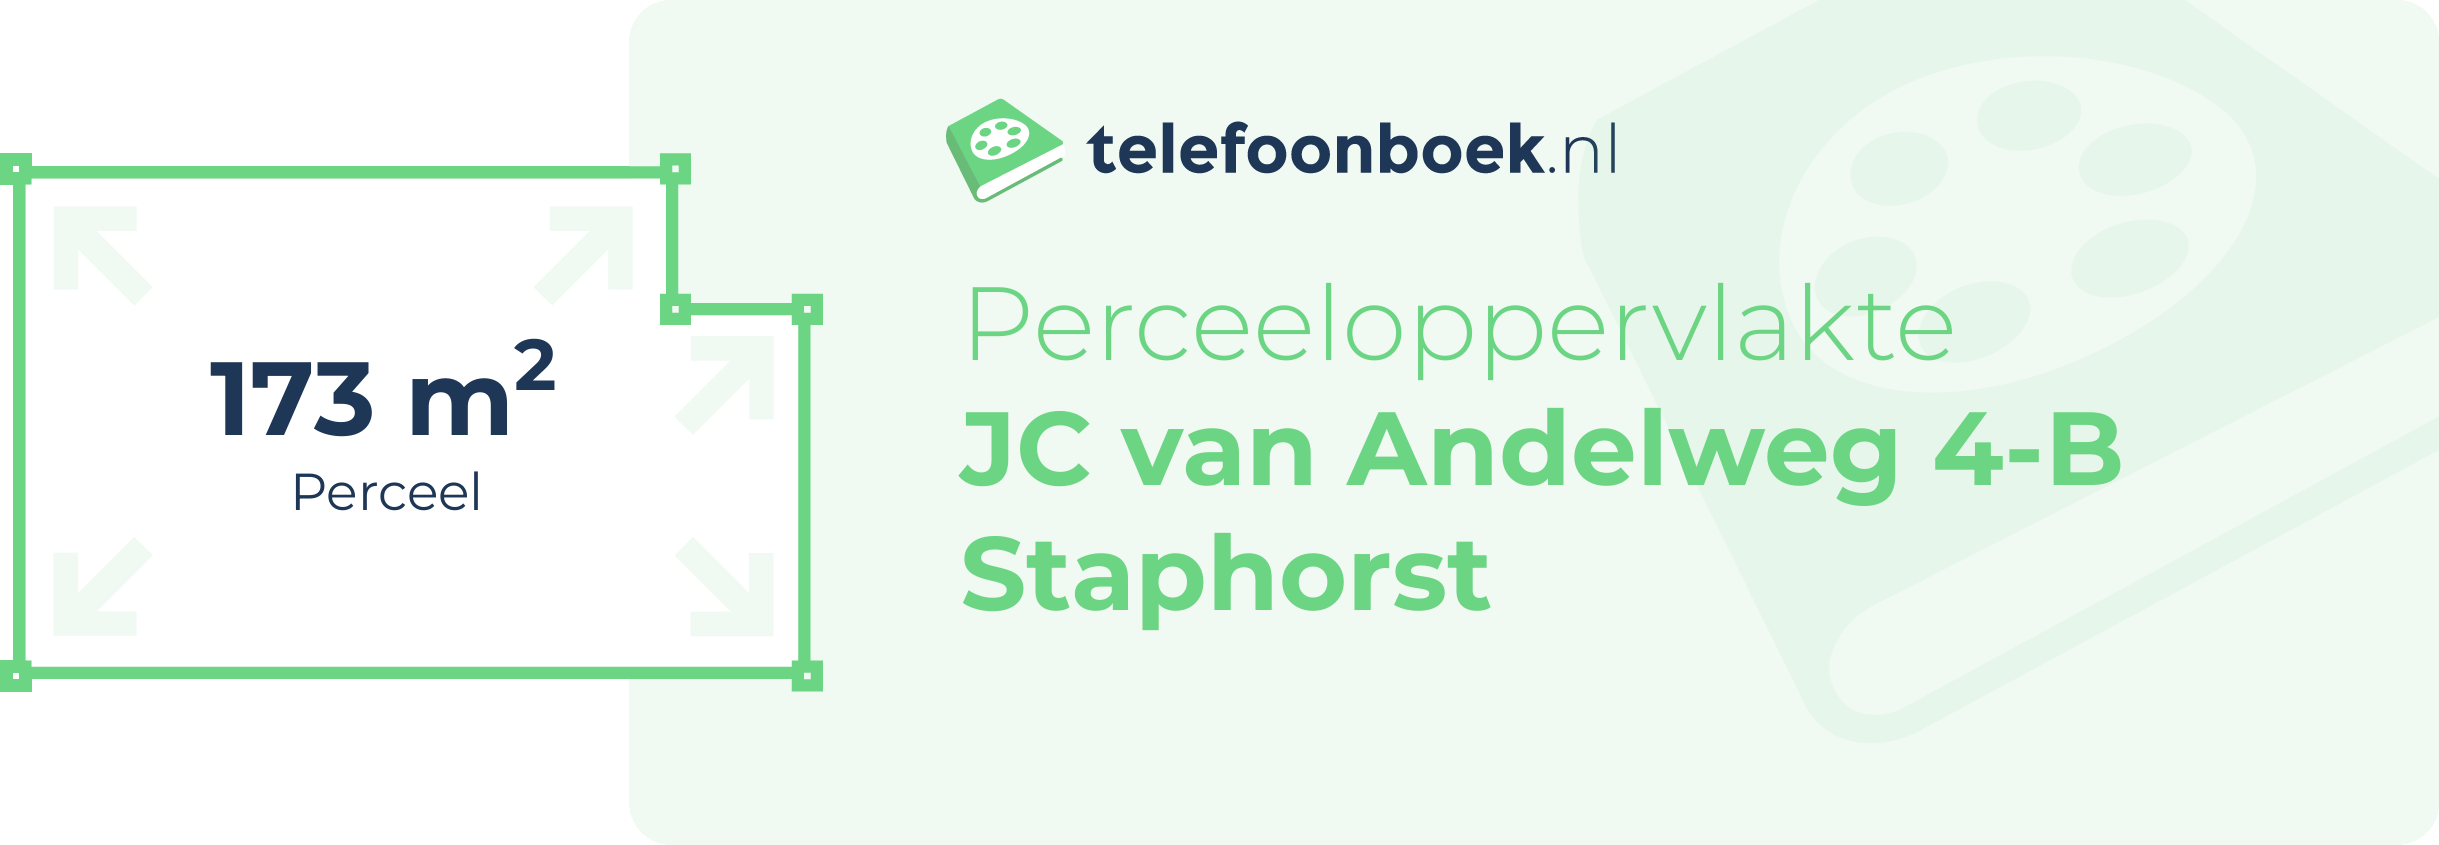 Perceeloppervlakte JC Van Andelweg 4-B Staphorst